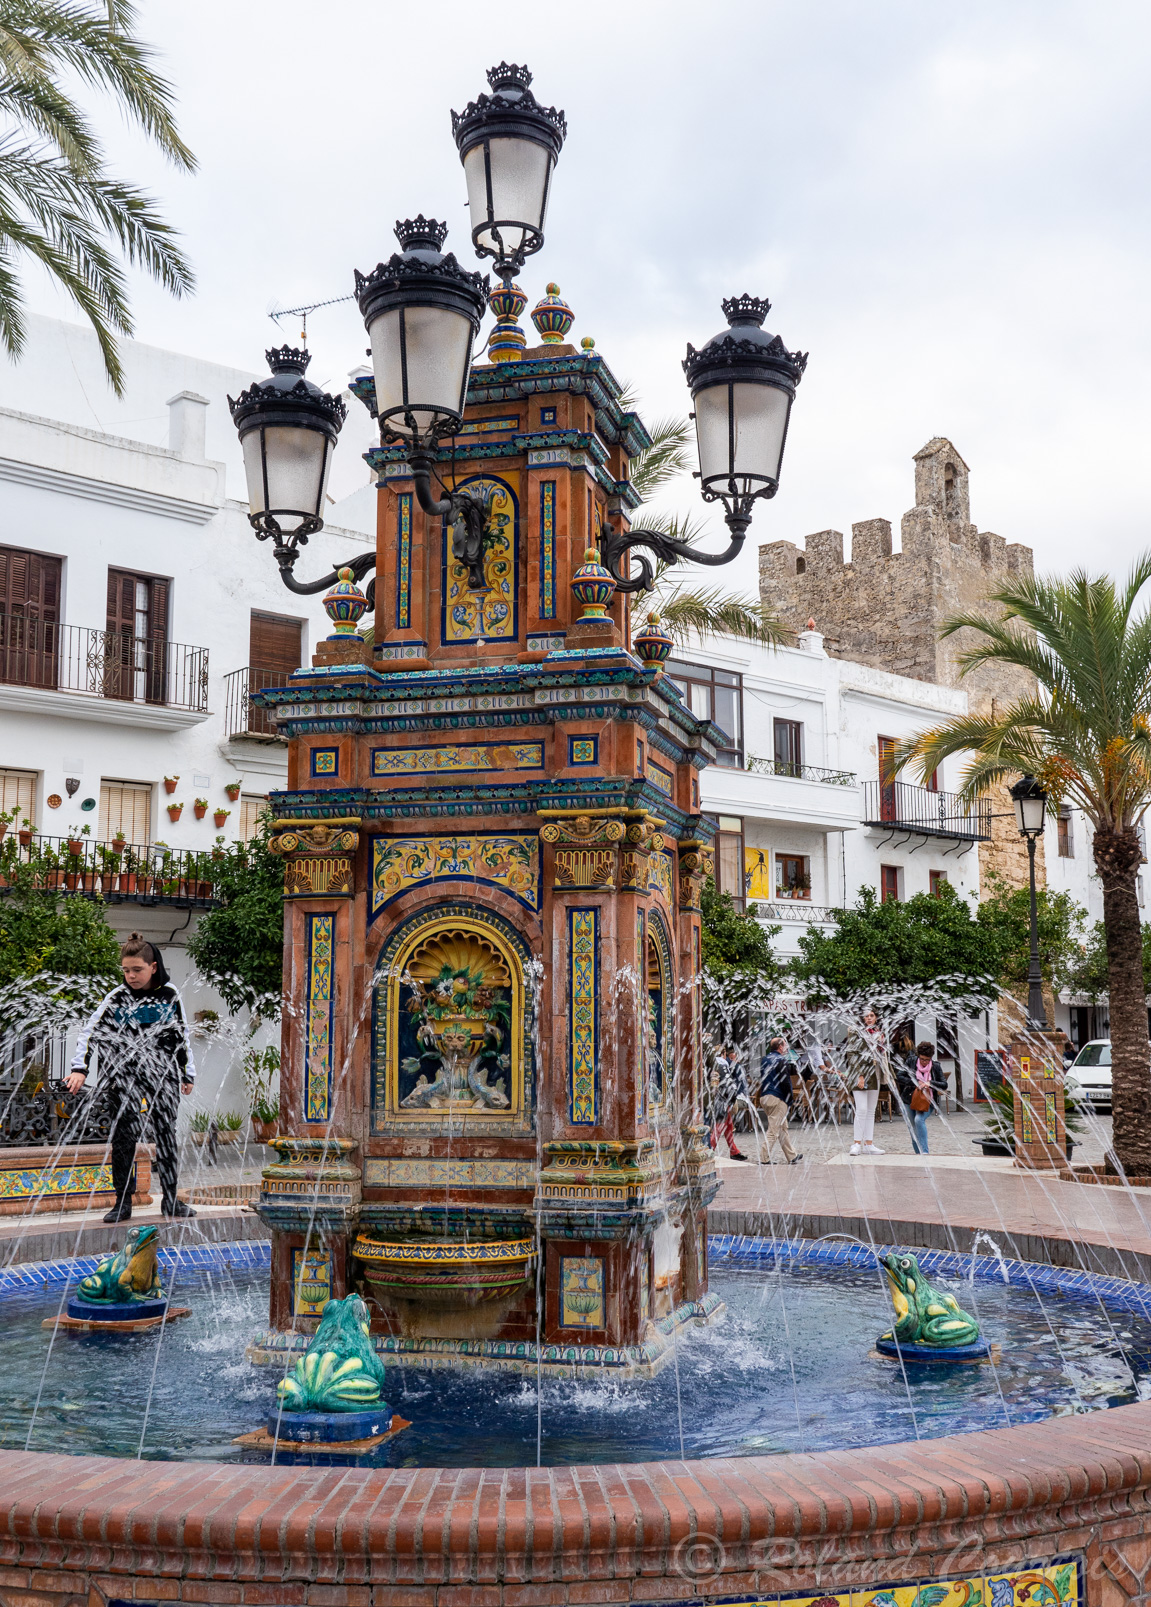 La Plaza de España est dominée par une fontaine ornée de carreaux sévillans. Encore appelée Plaza de los Pescaitos en raison des poissons qui ornent la fontaine centrale.